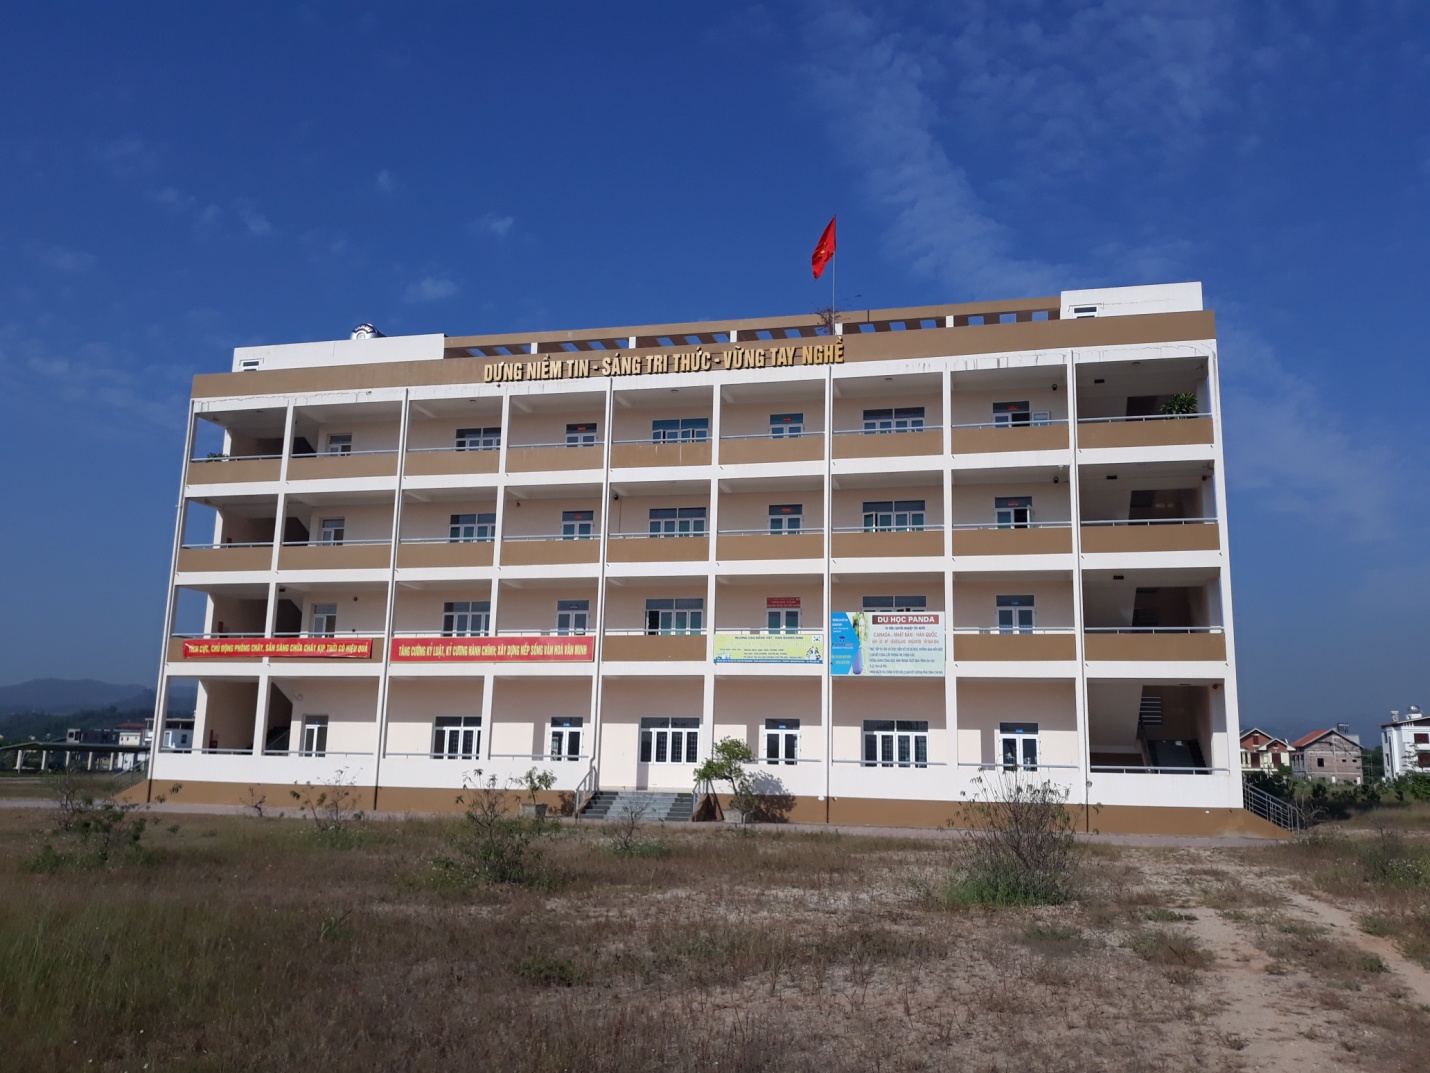 Trường Cao đẳng Việt - Hàn Quảng Ninh: Nơi niềm tin tỏa sáng